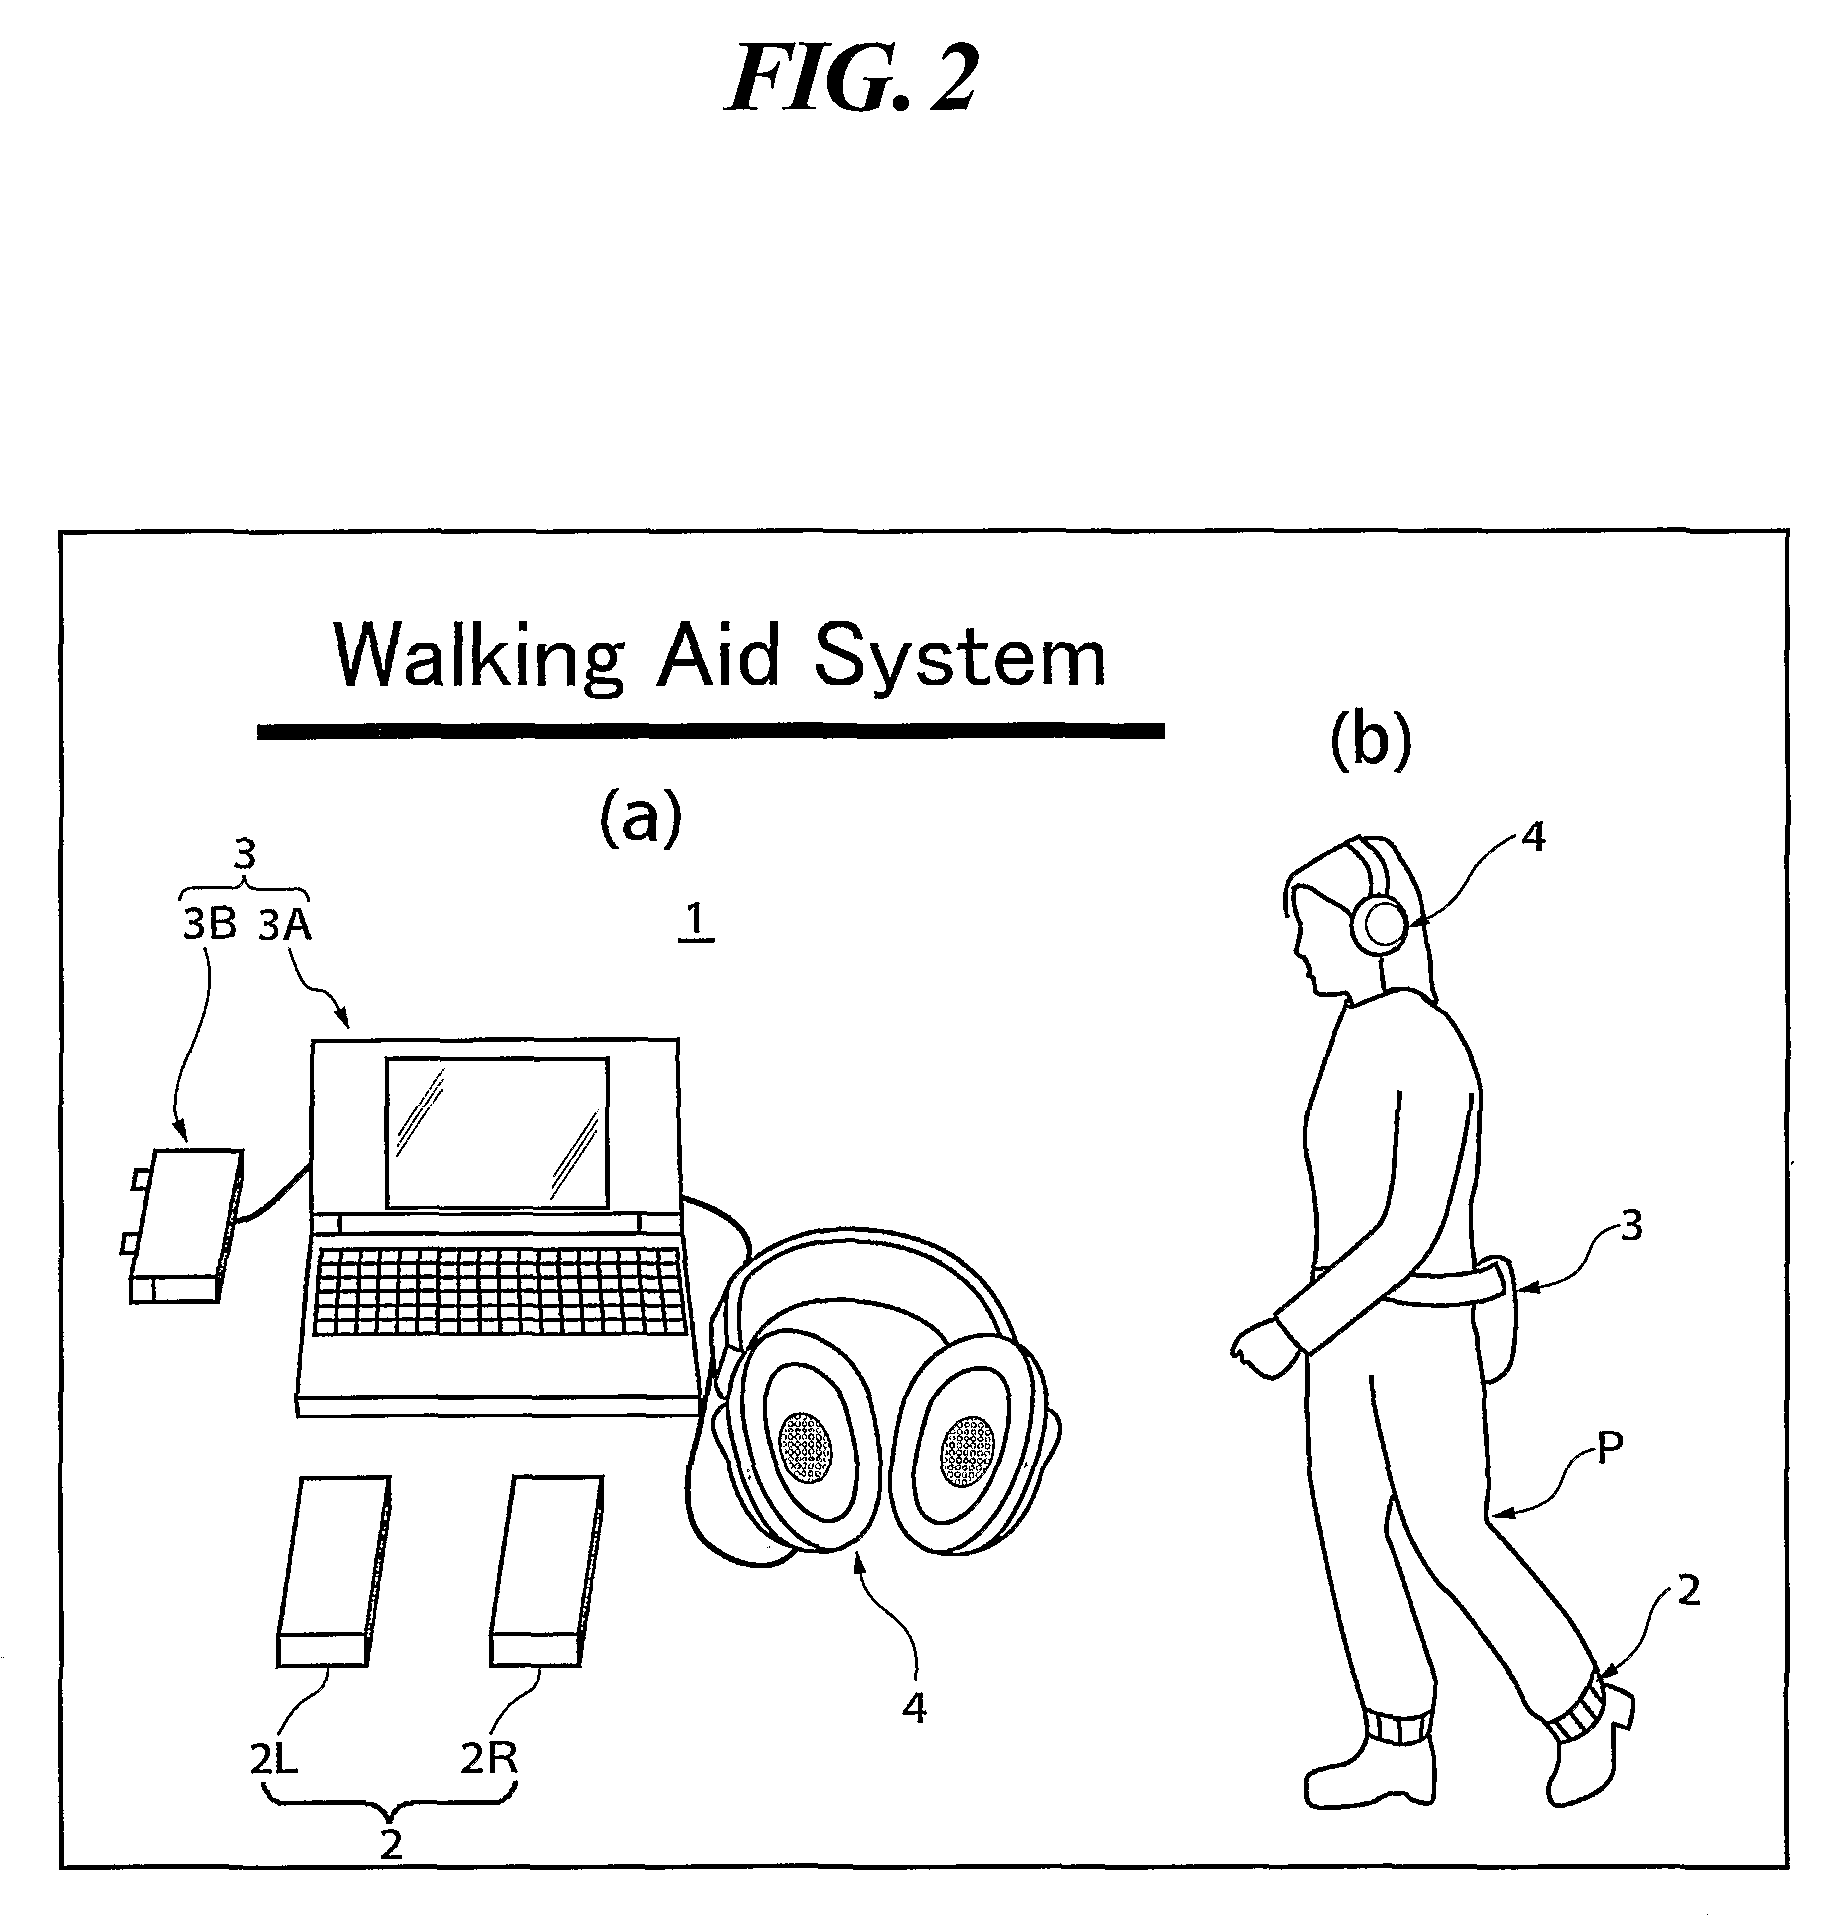 Walking aid system